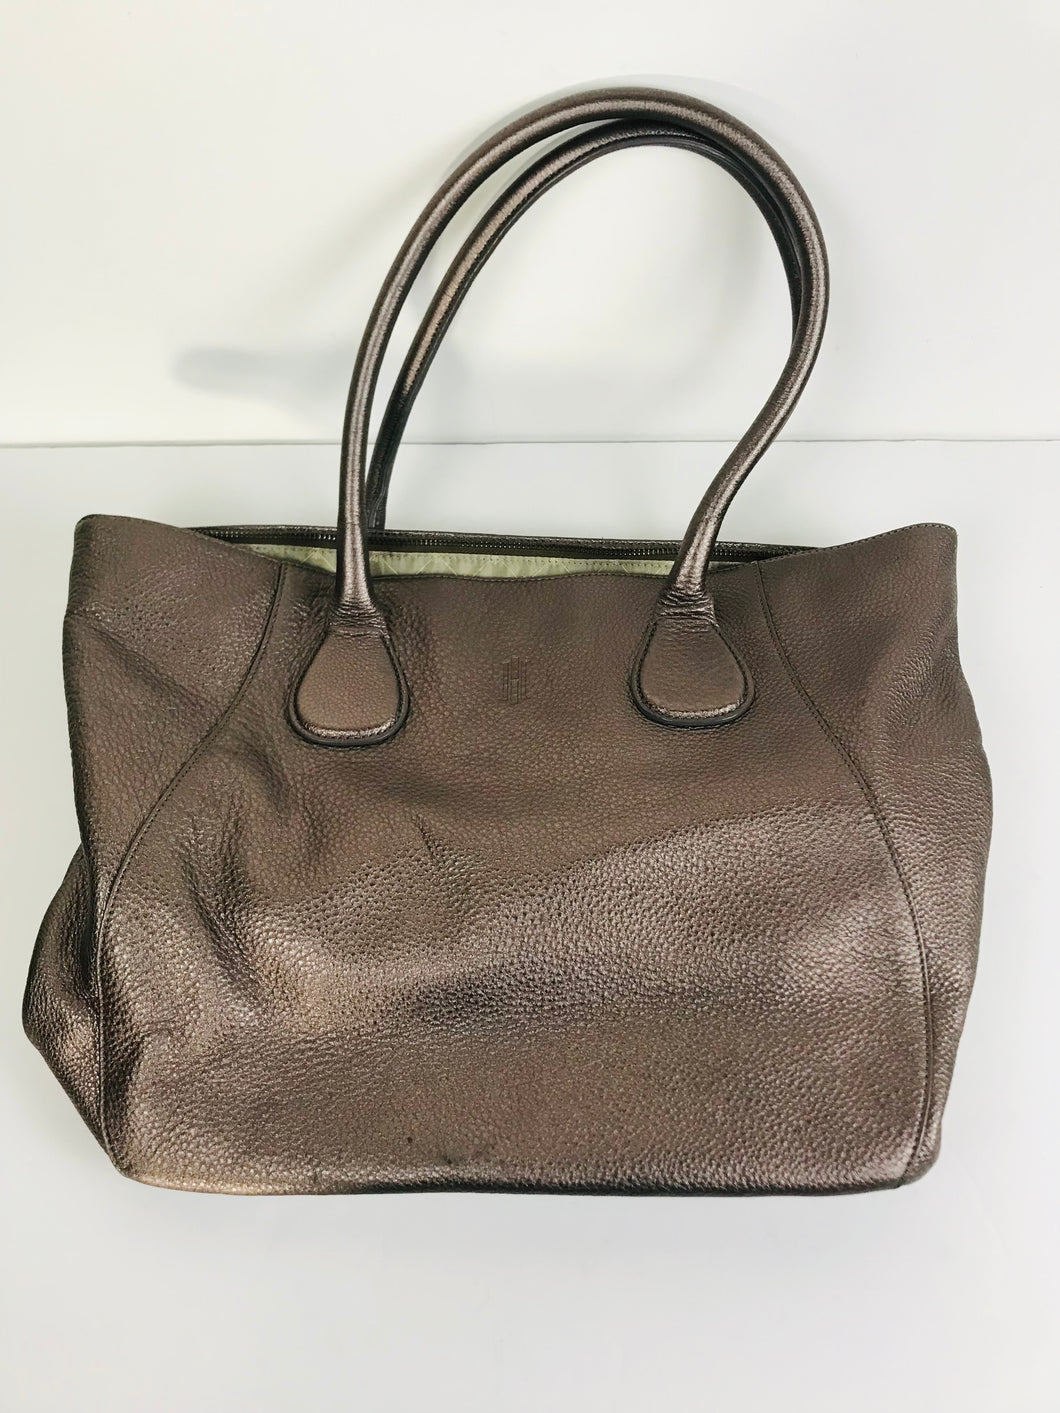 Hobbs Women's Leather Tote Bag | L UK14 | Brown